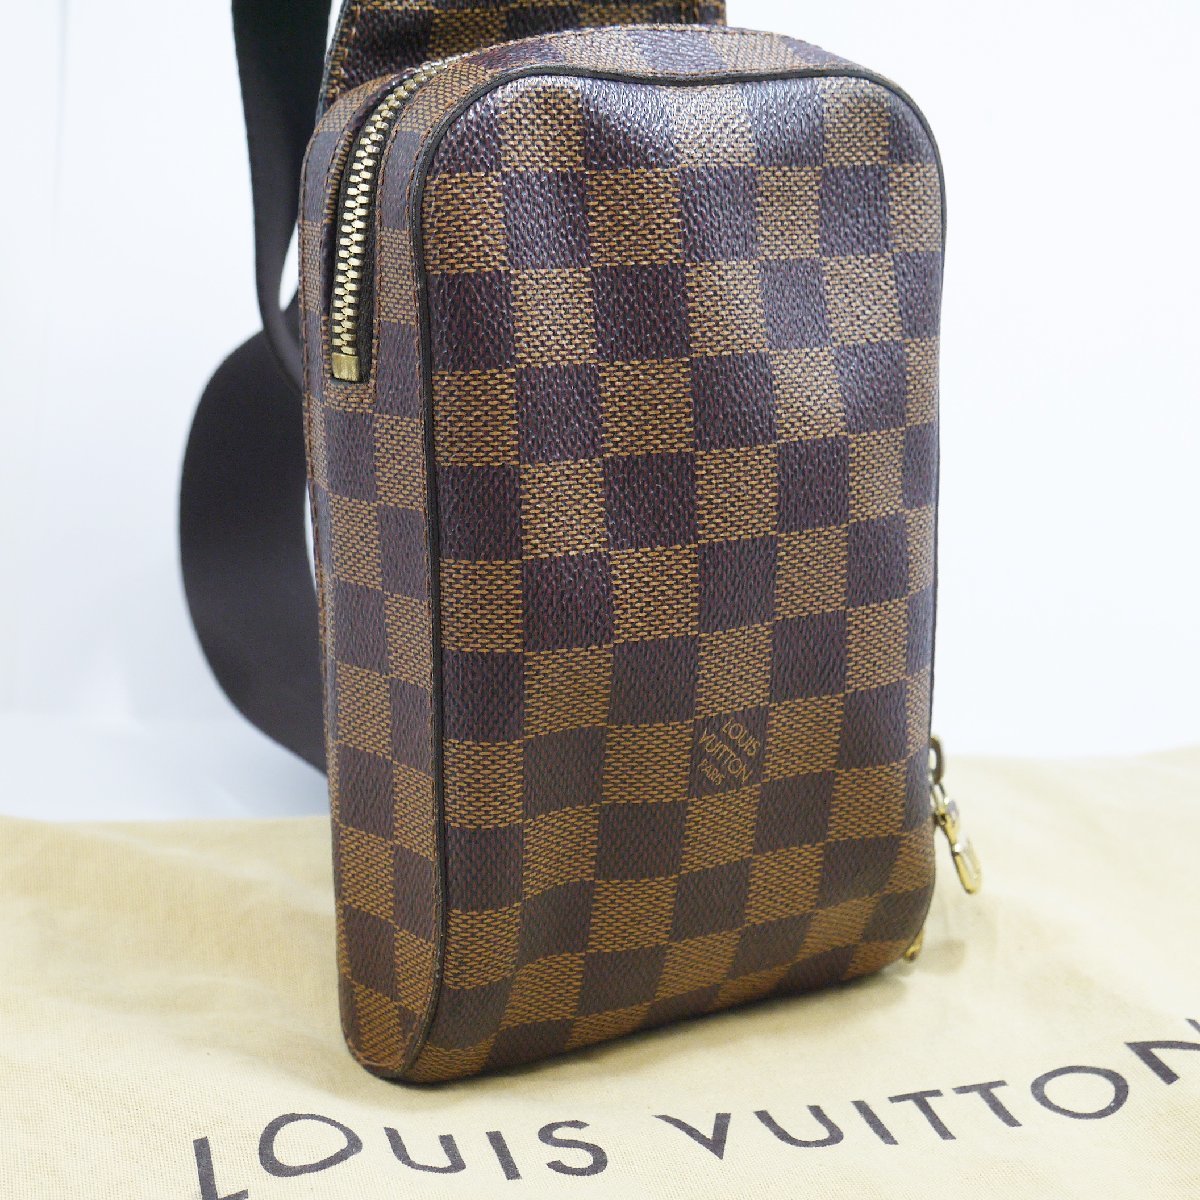 USED品・保管品 Louis Vuitton ルイヴィトン N51994 ジェロニモス ボディバッグ ダミエ・エベヌ CA0044 ゴールド金具 保存袋付き